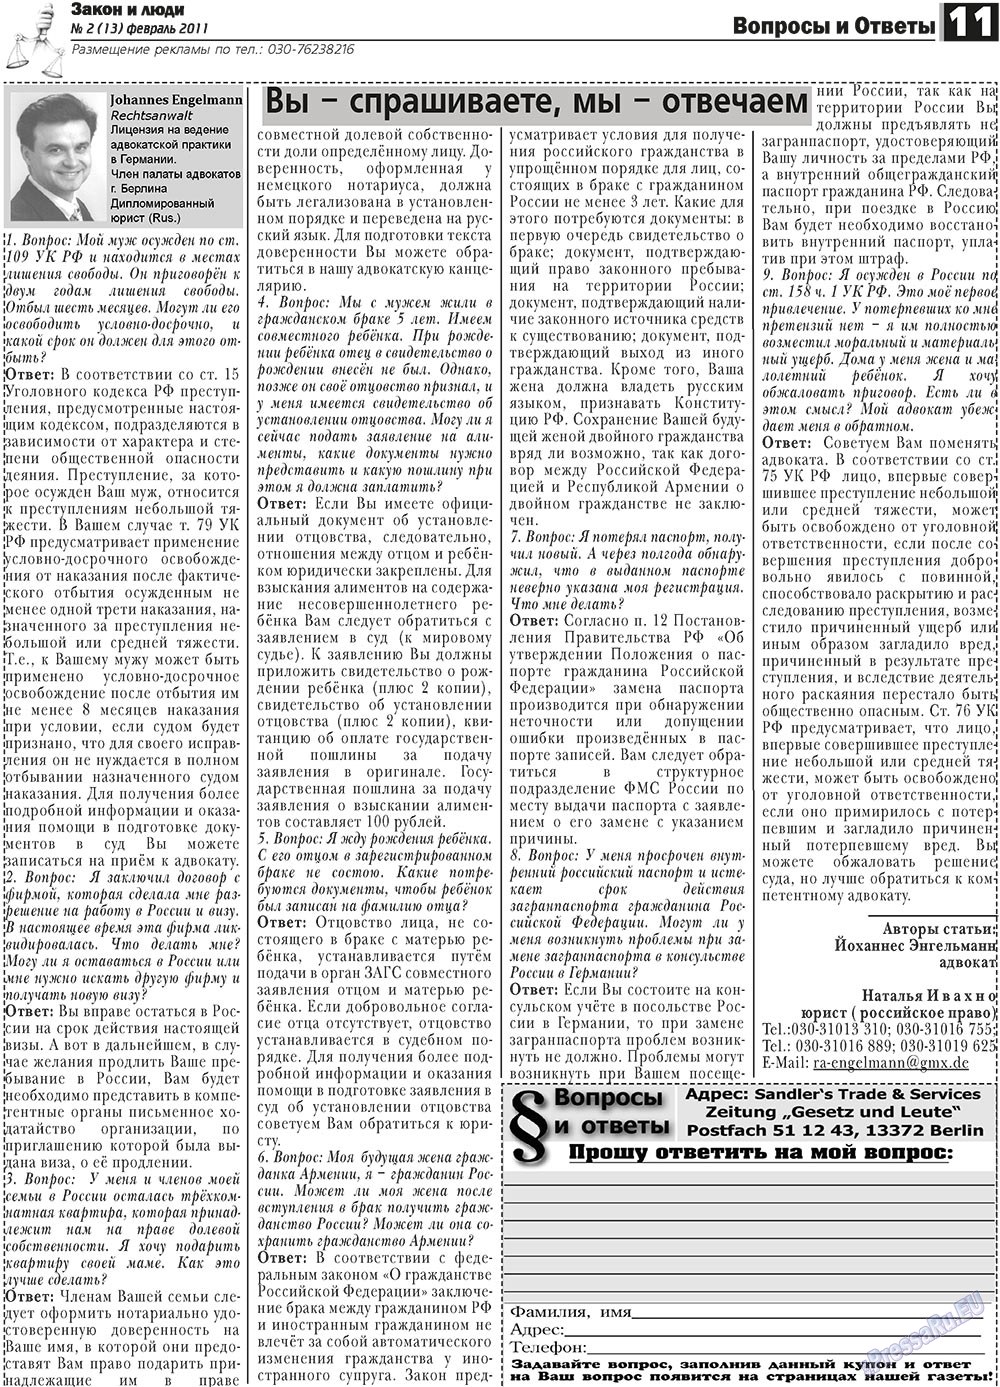 Закон и люди, газета. 2011 №2 стр.11